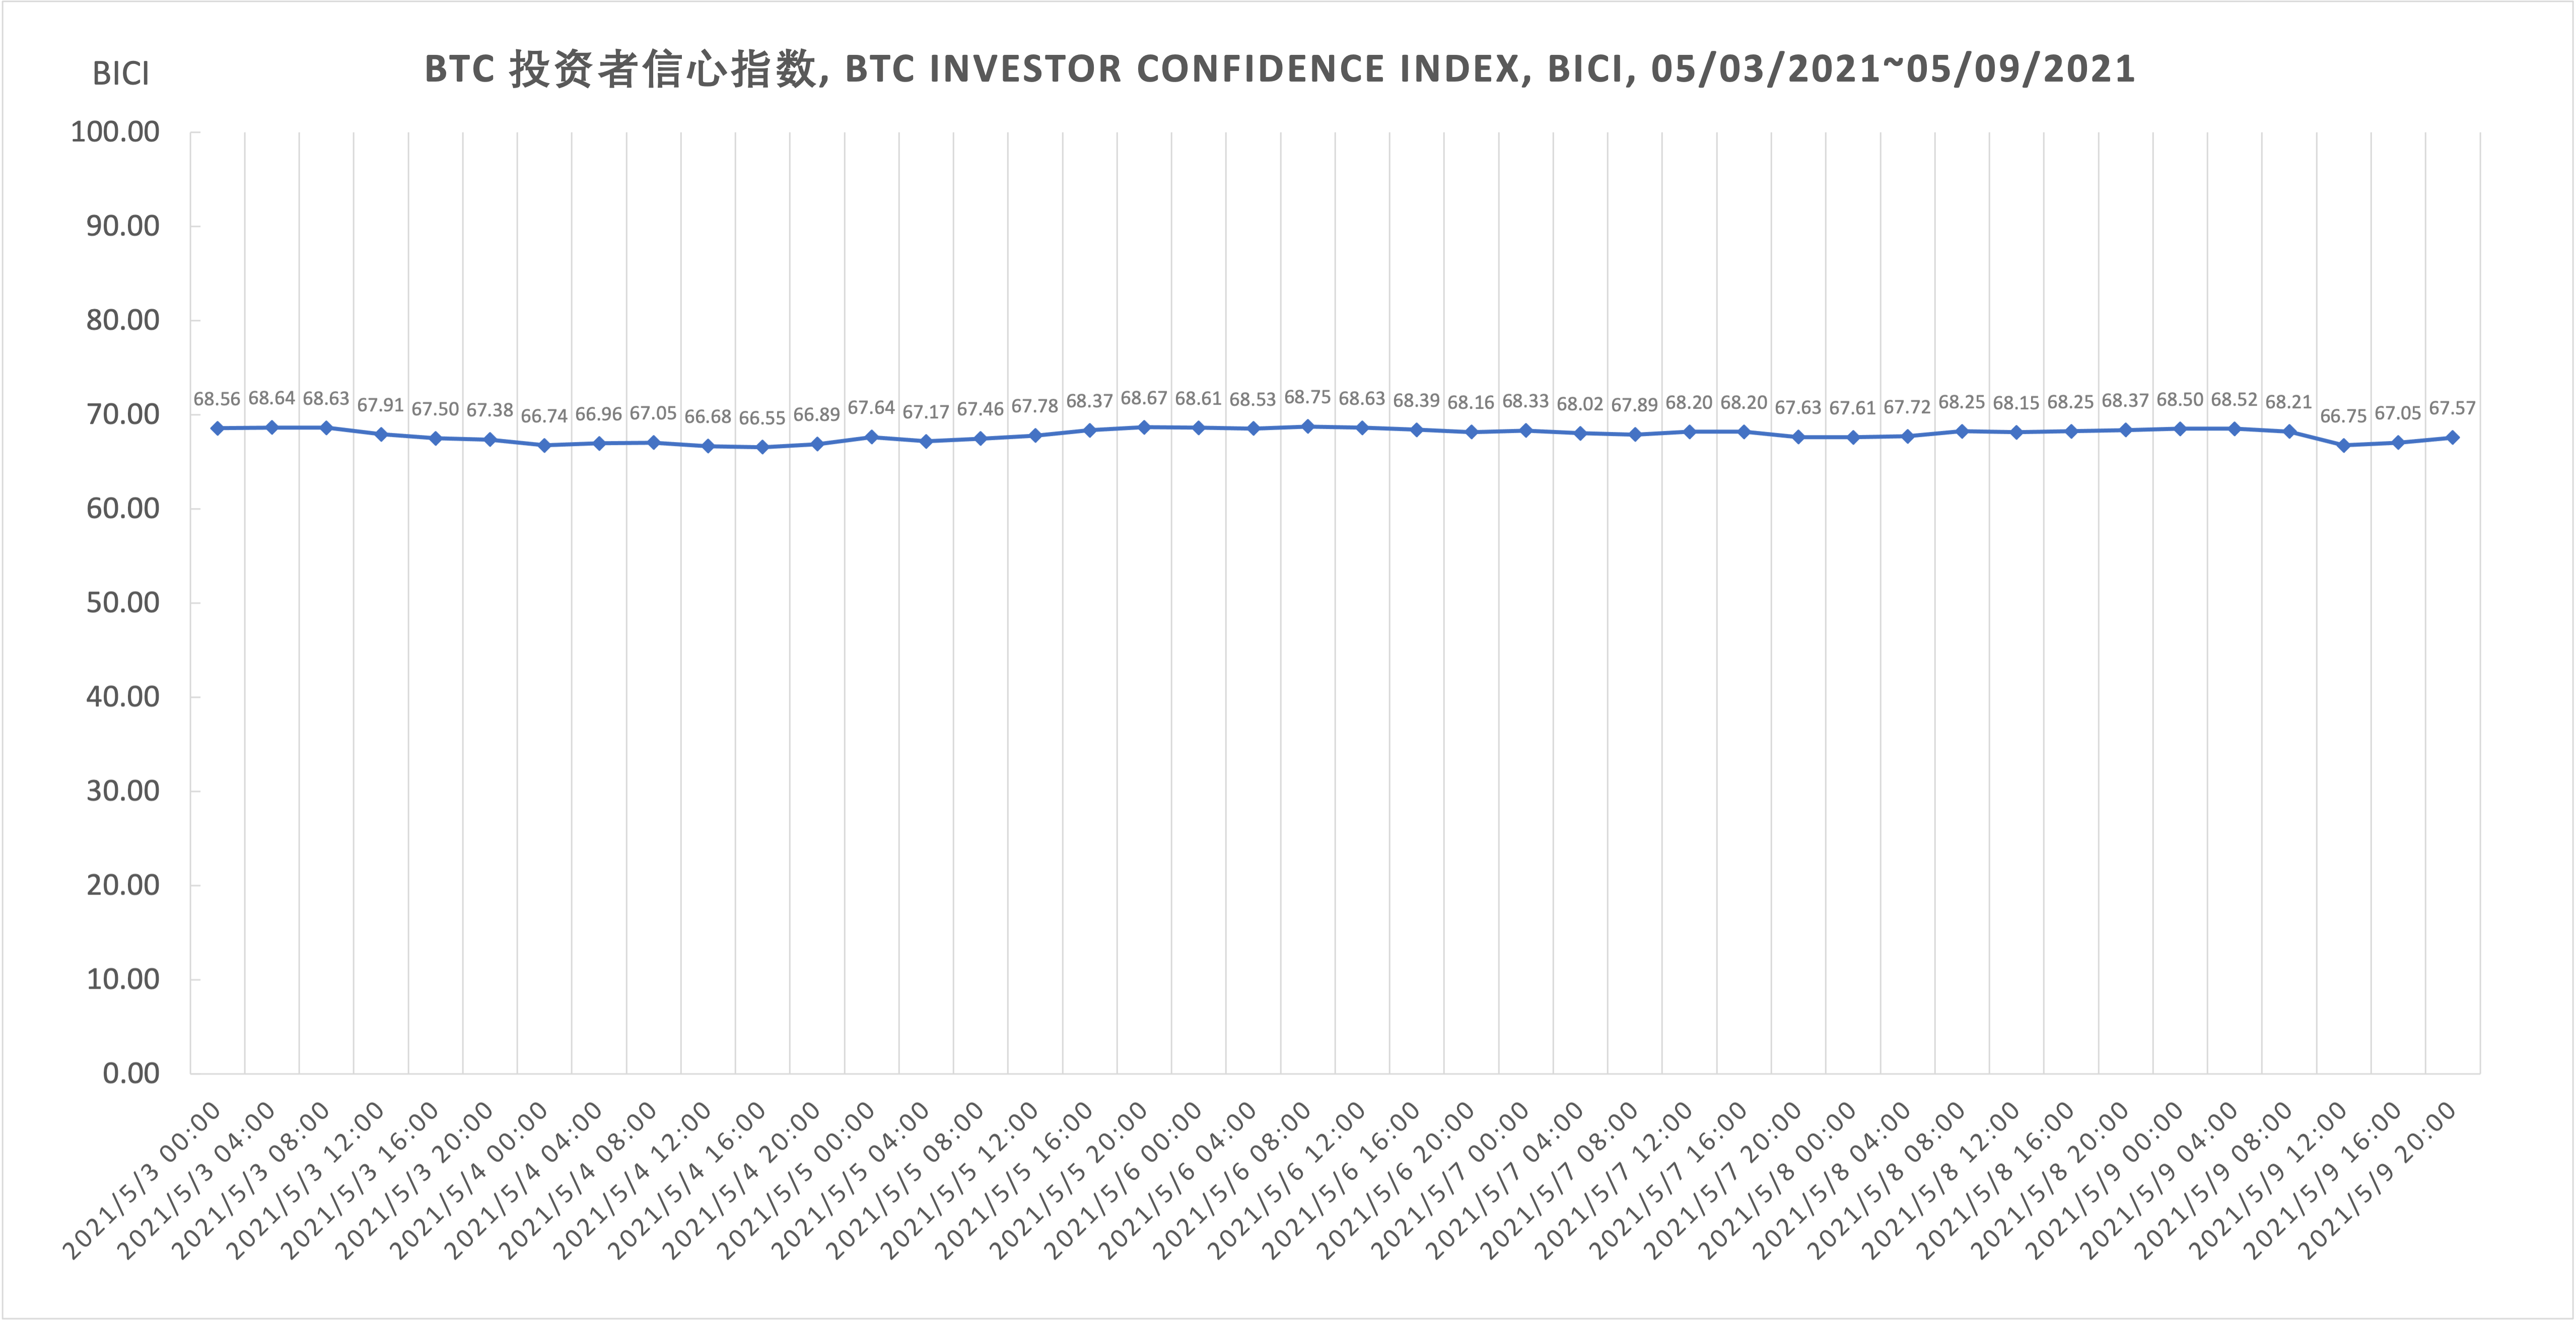 比特币投资者心指数总体呈现小幅度起伏动走势 BICI, 5.03-5.09